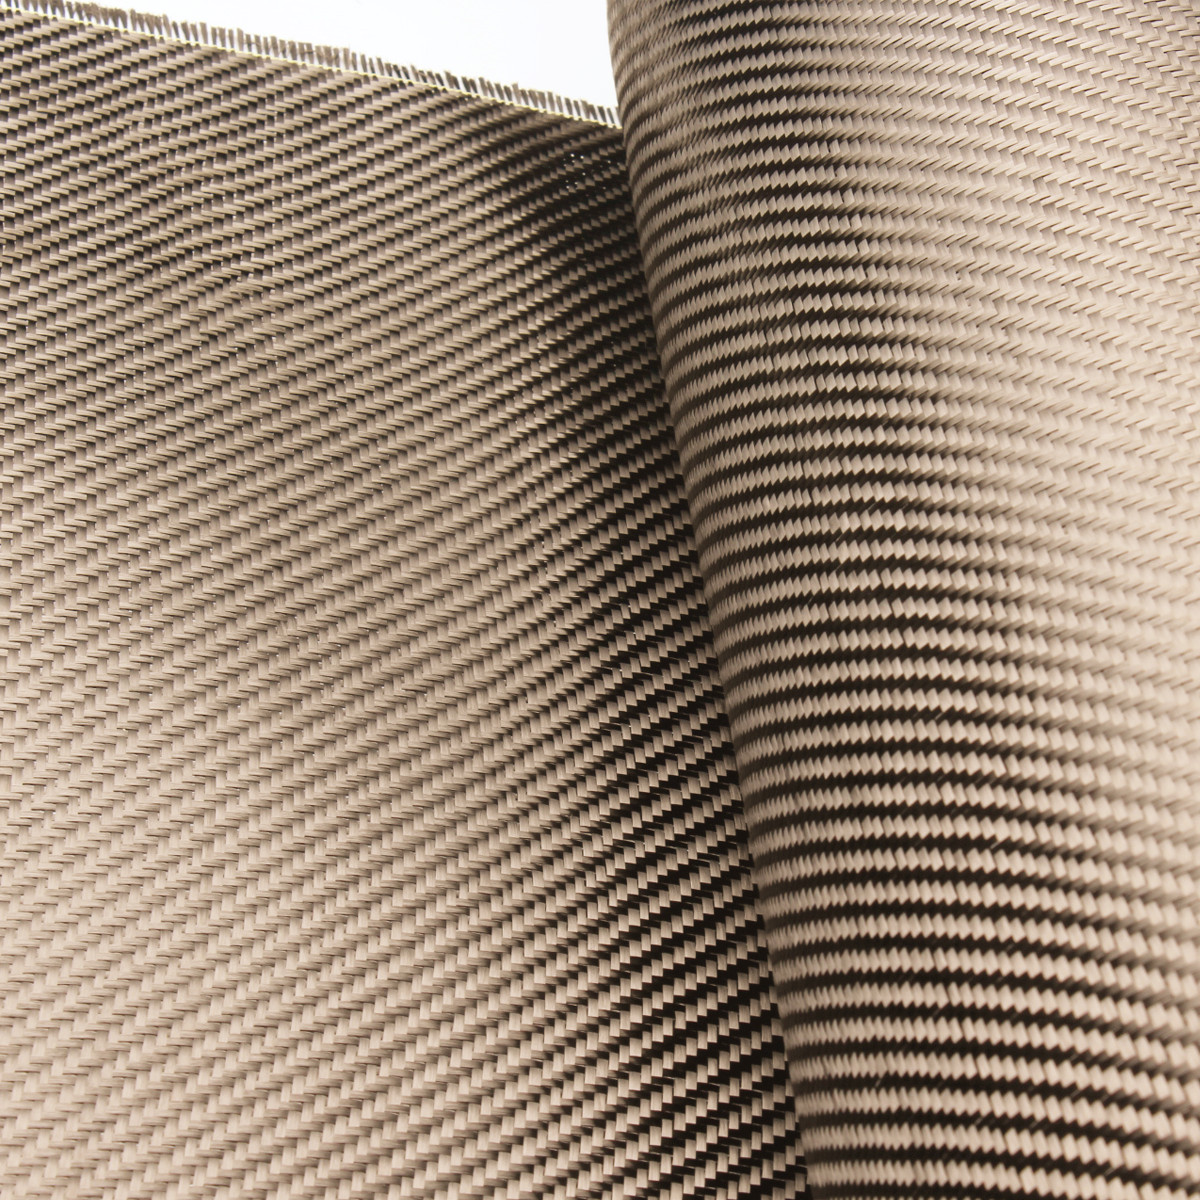 Fireproof twill woven basalt fiber fabric